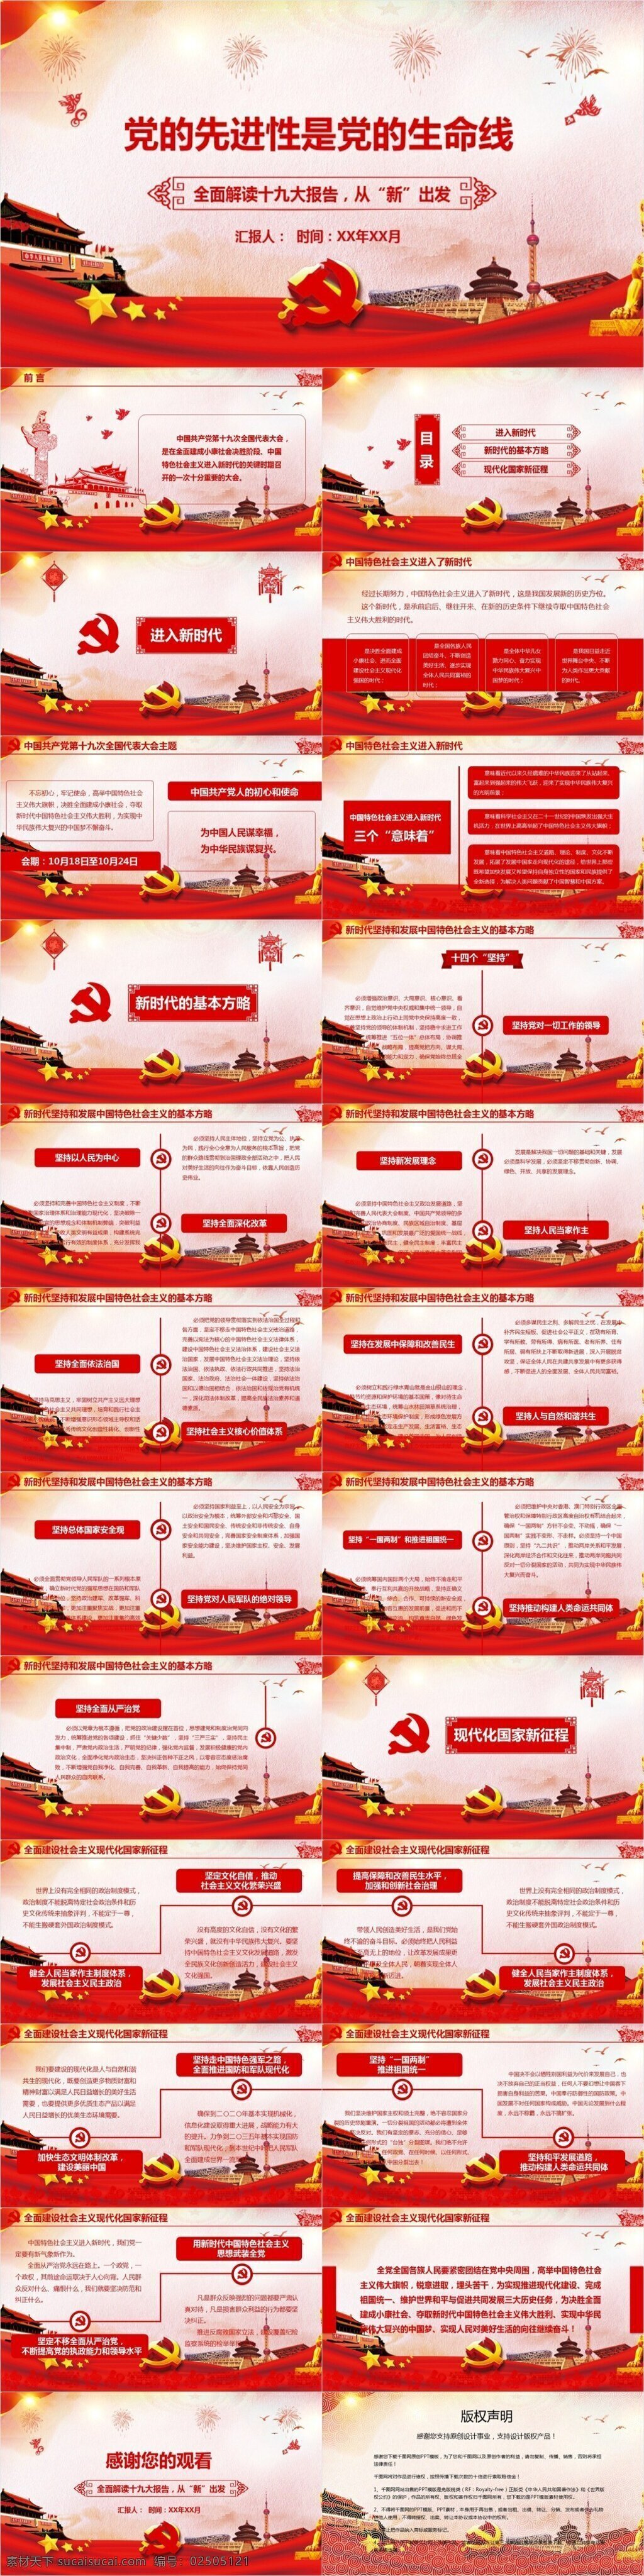 党 先进性 生命线 模板 范本 党的生命线 党的先进性 全面 解读 十 九大 报告 中国共产党 中国 特色 社会主义